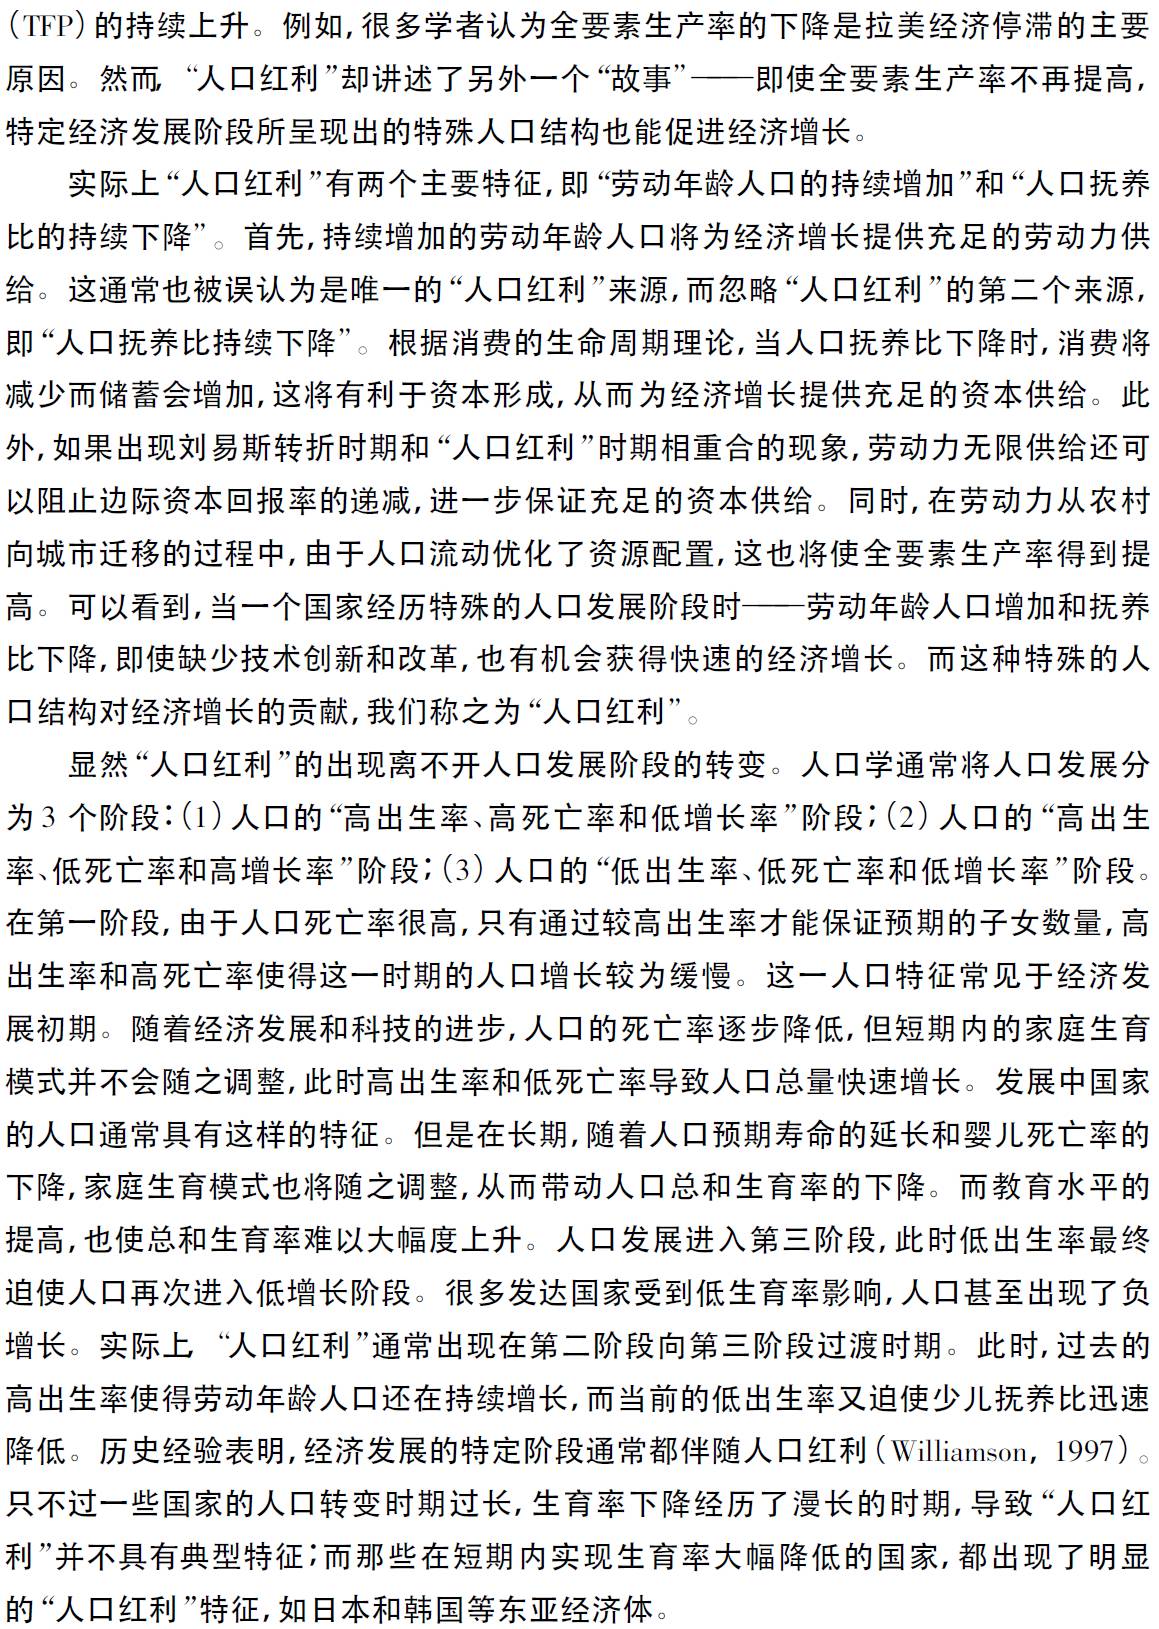 中国人口红利现状_人口政策红利